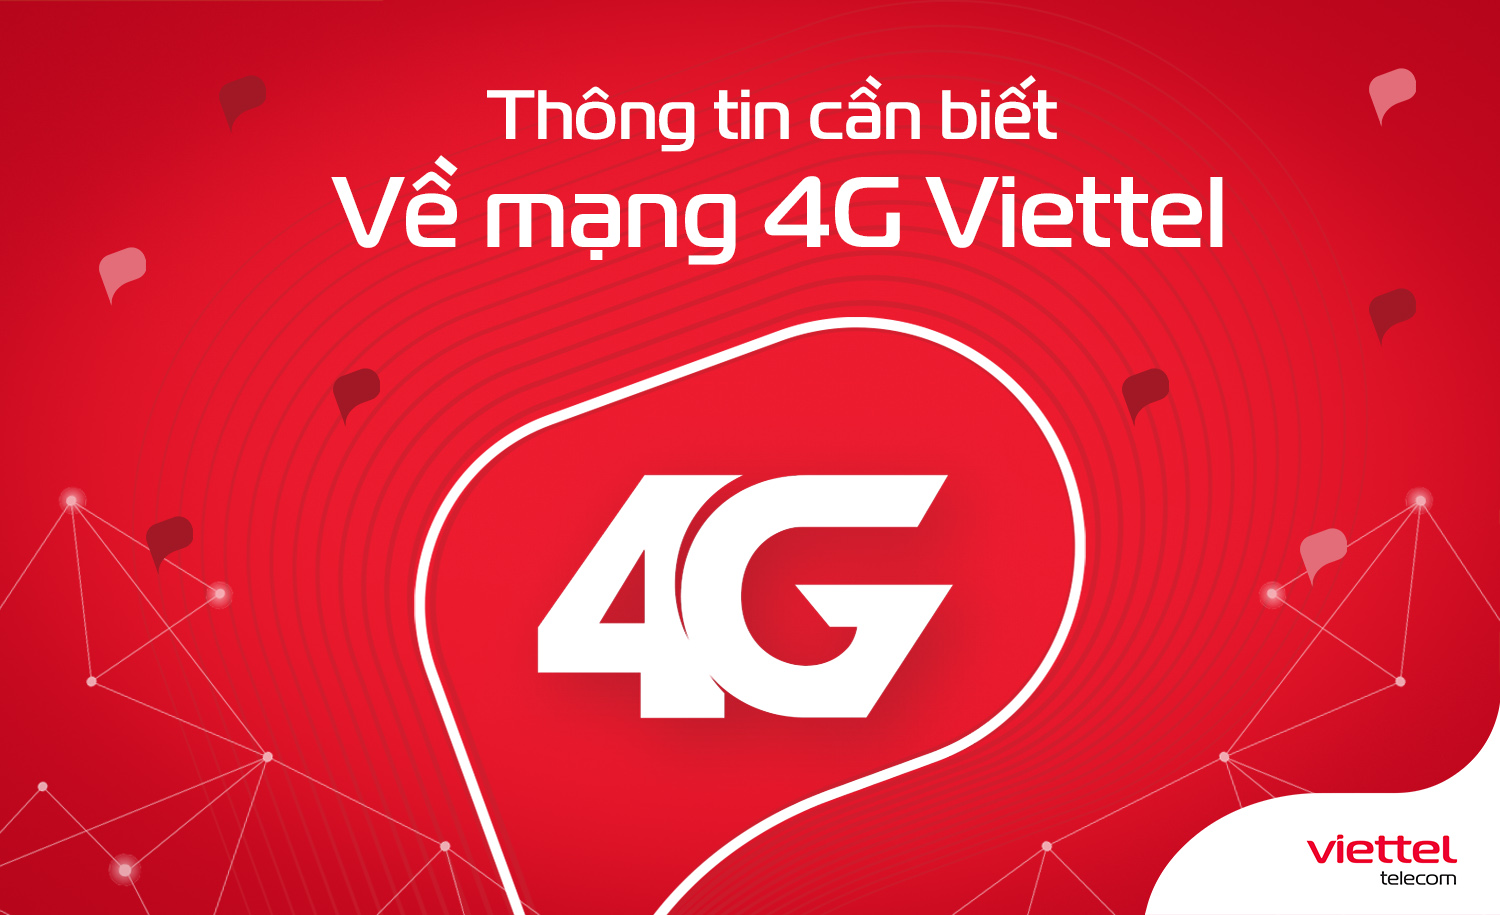 Thông tin cần biết về mạng 4G Viettel